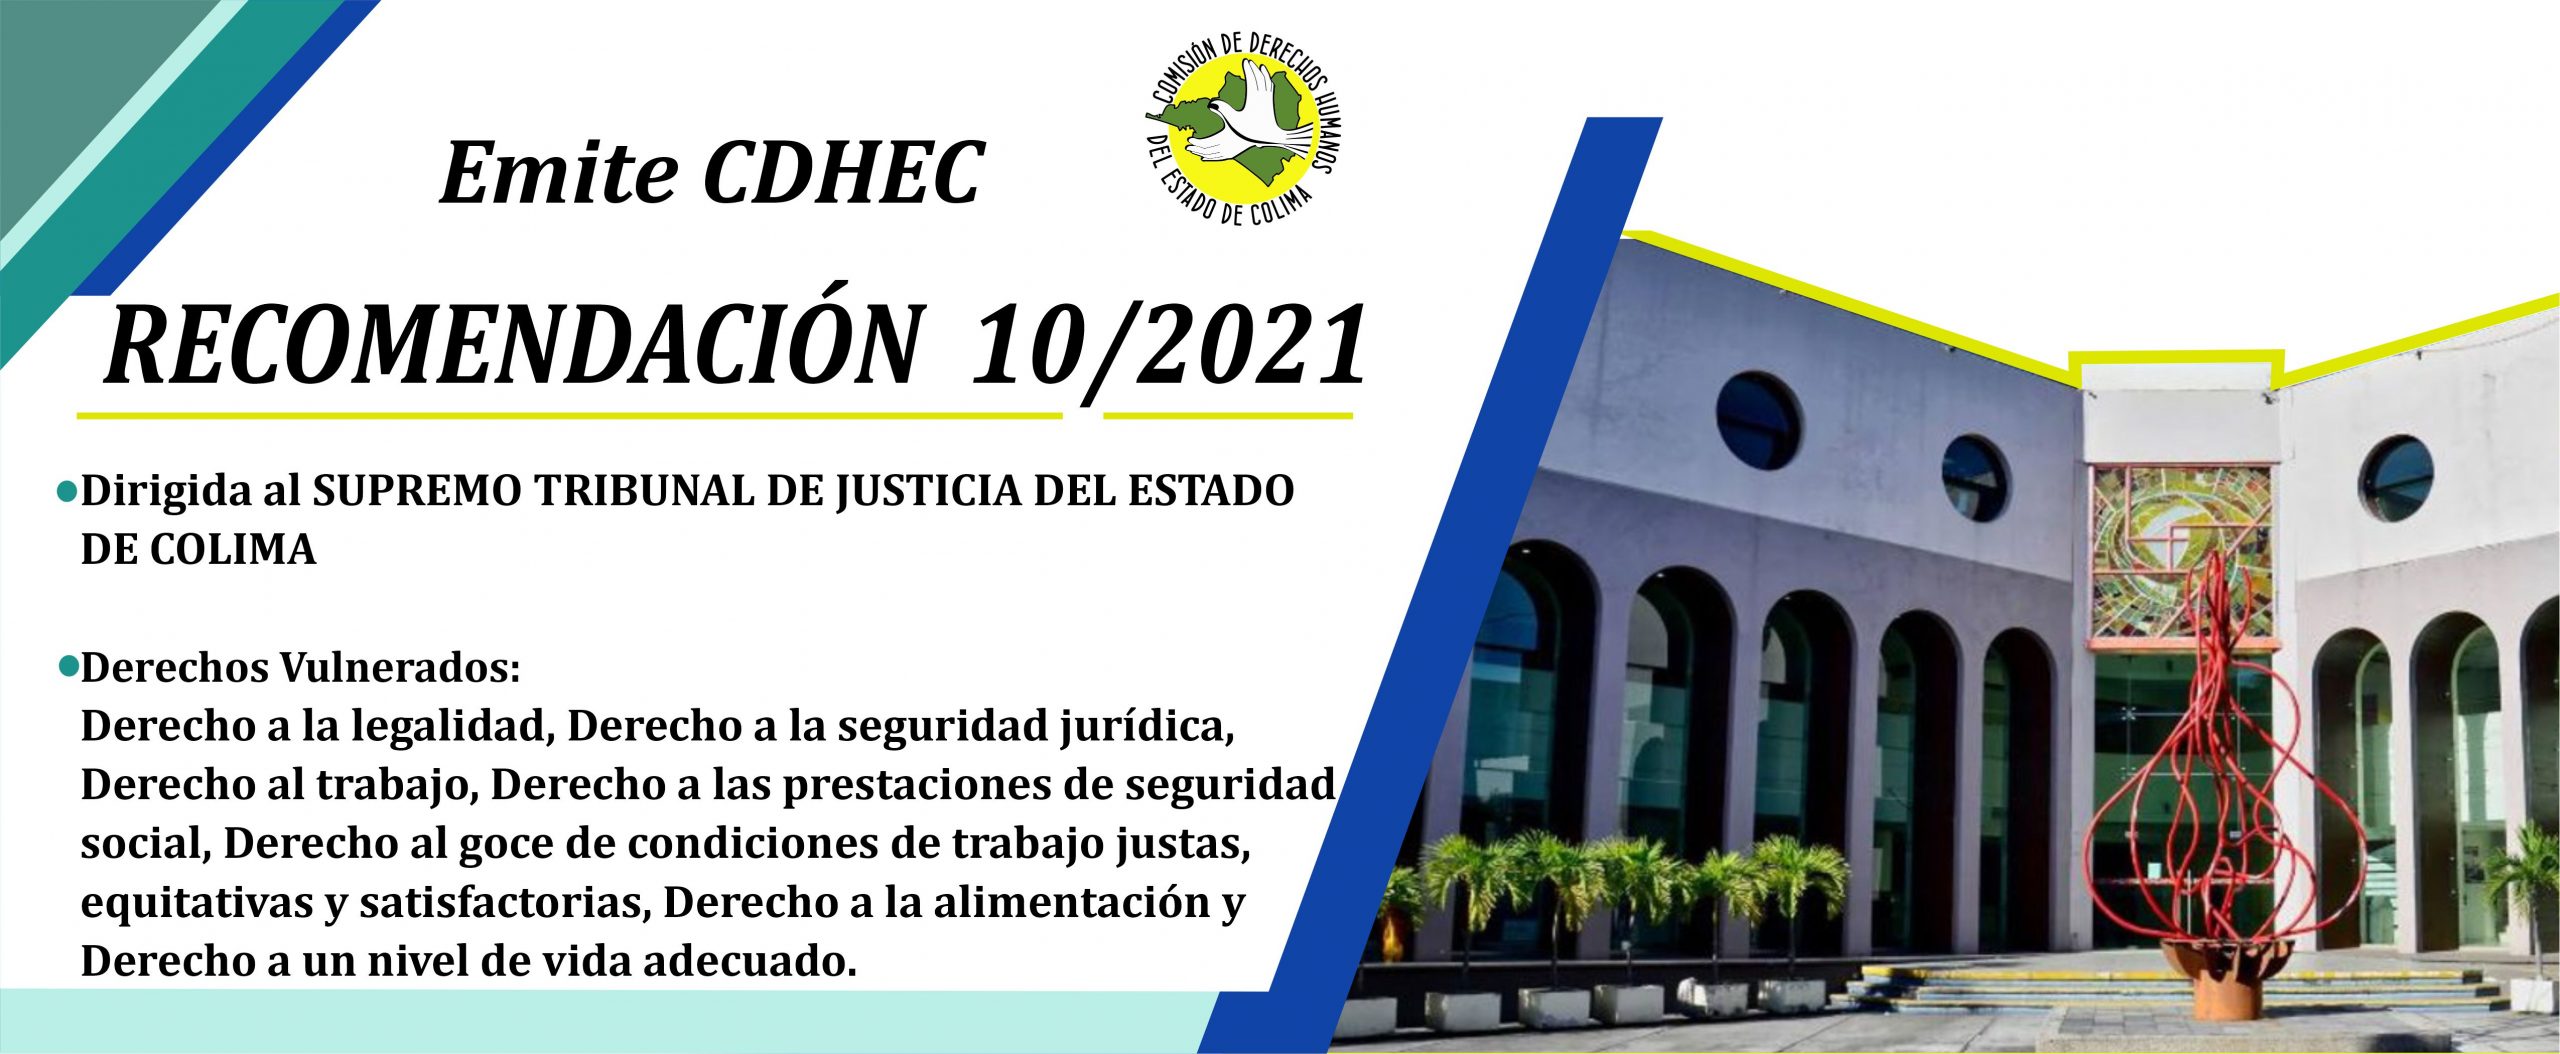 Emite CDHEC Recomendación al Presidente del Supremo Tribunal de Justicia del Estado de Colima